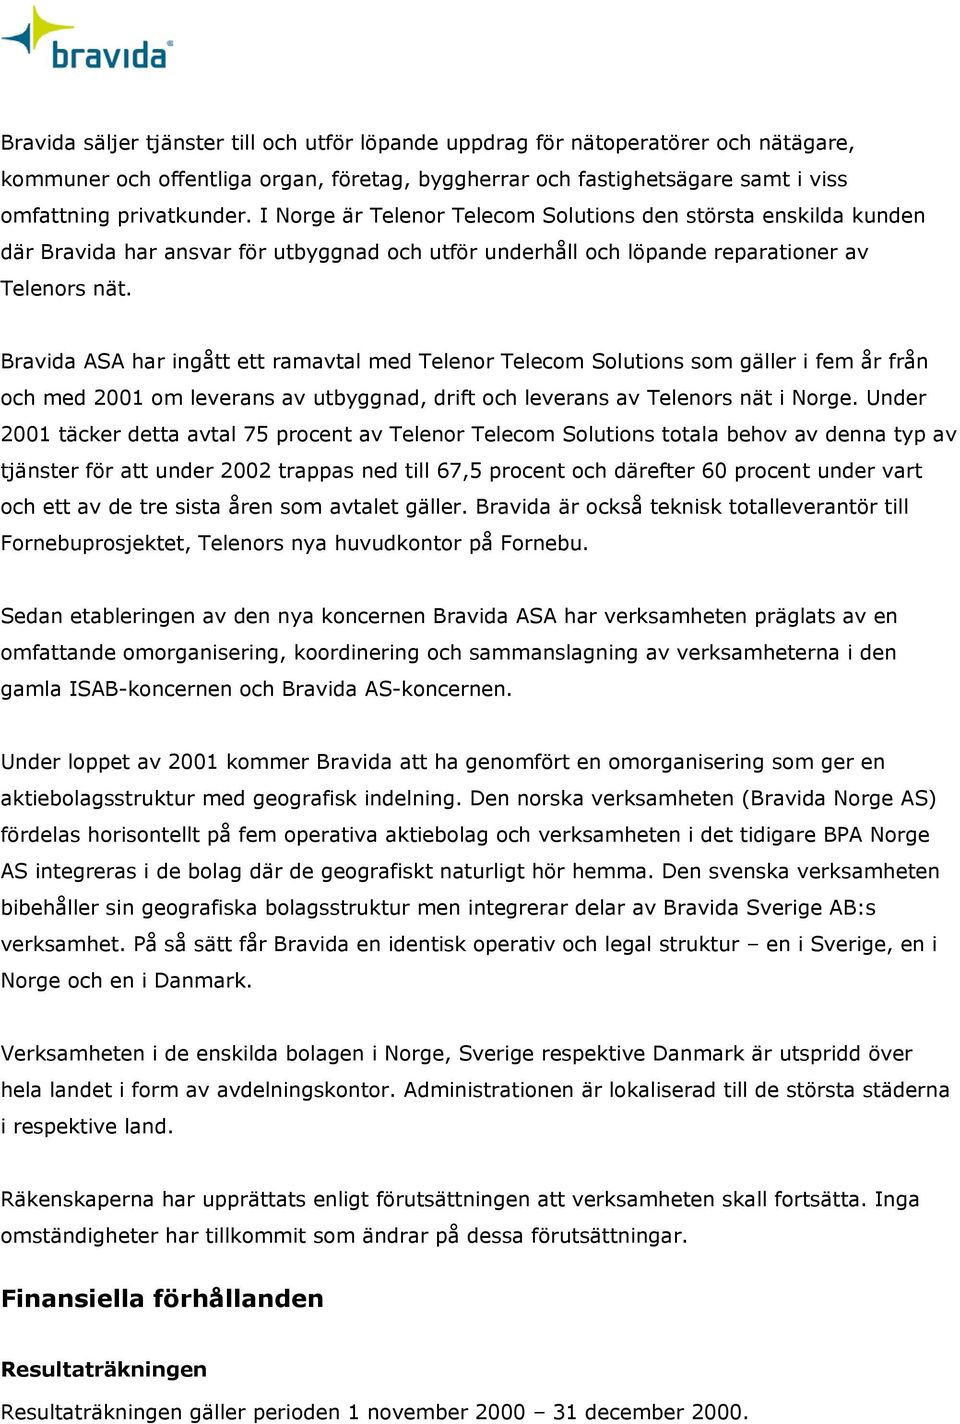 Bravida ASA har ingått ett ramavtal med Telenor Telecom Solutions som gäller i fem år från och med 2001 om leverans av utbyggnad, drift och leverans av Telenors nät i Norge.